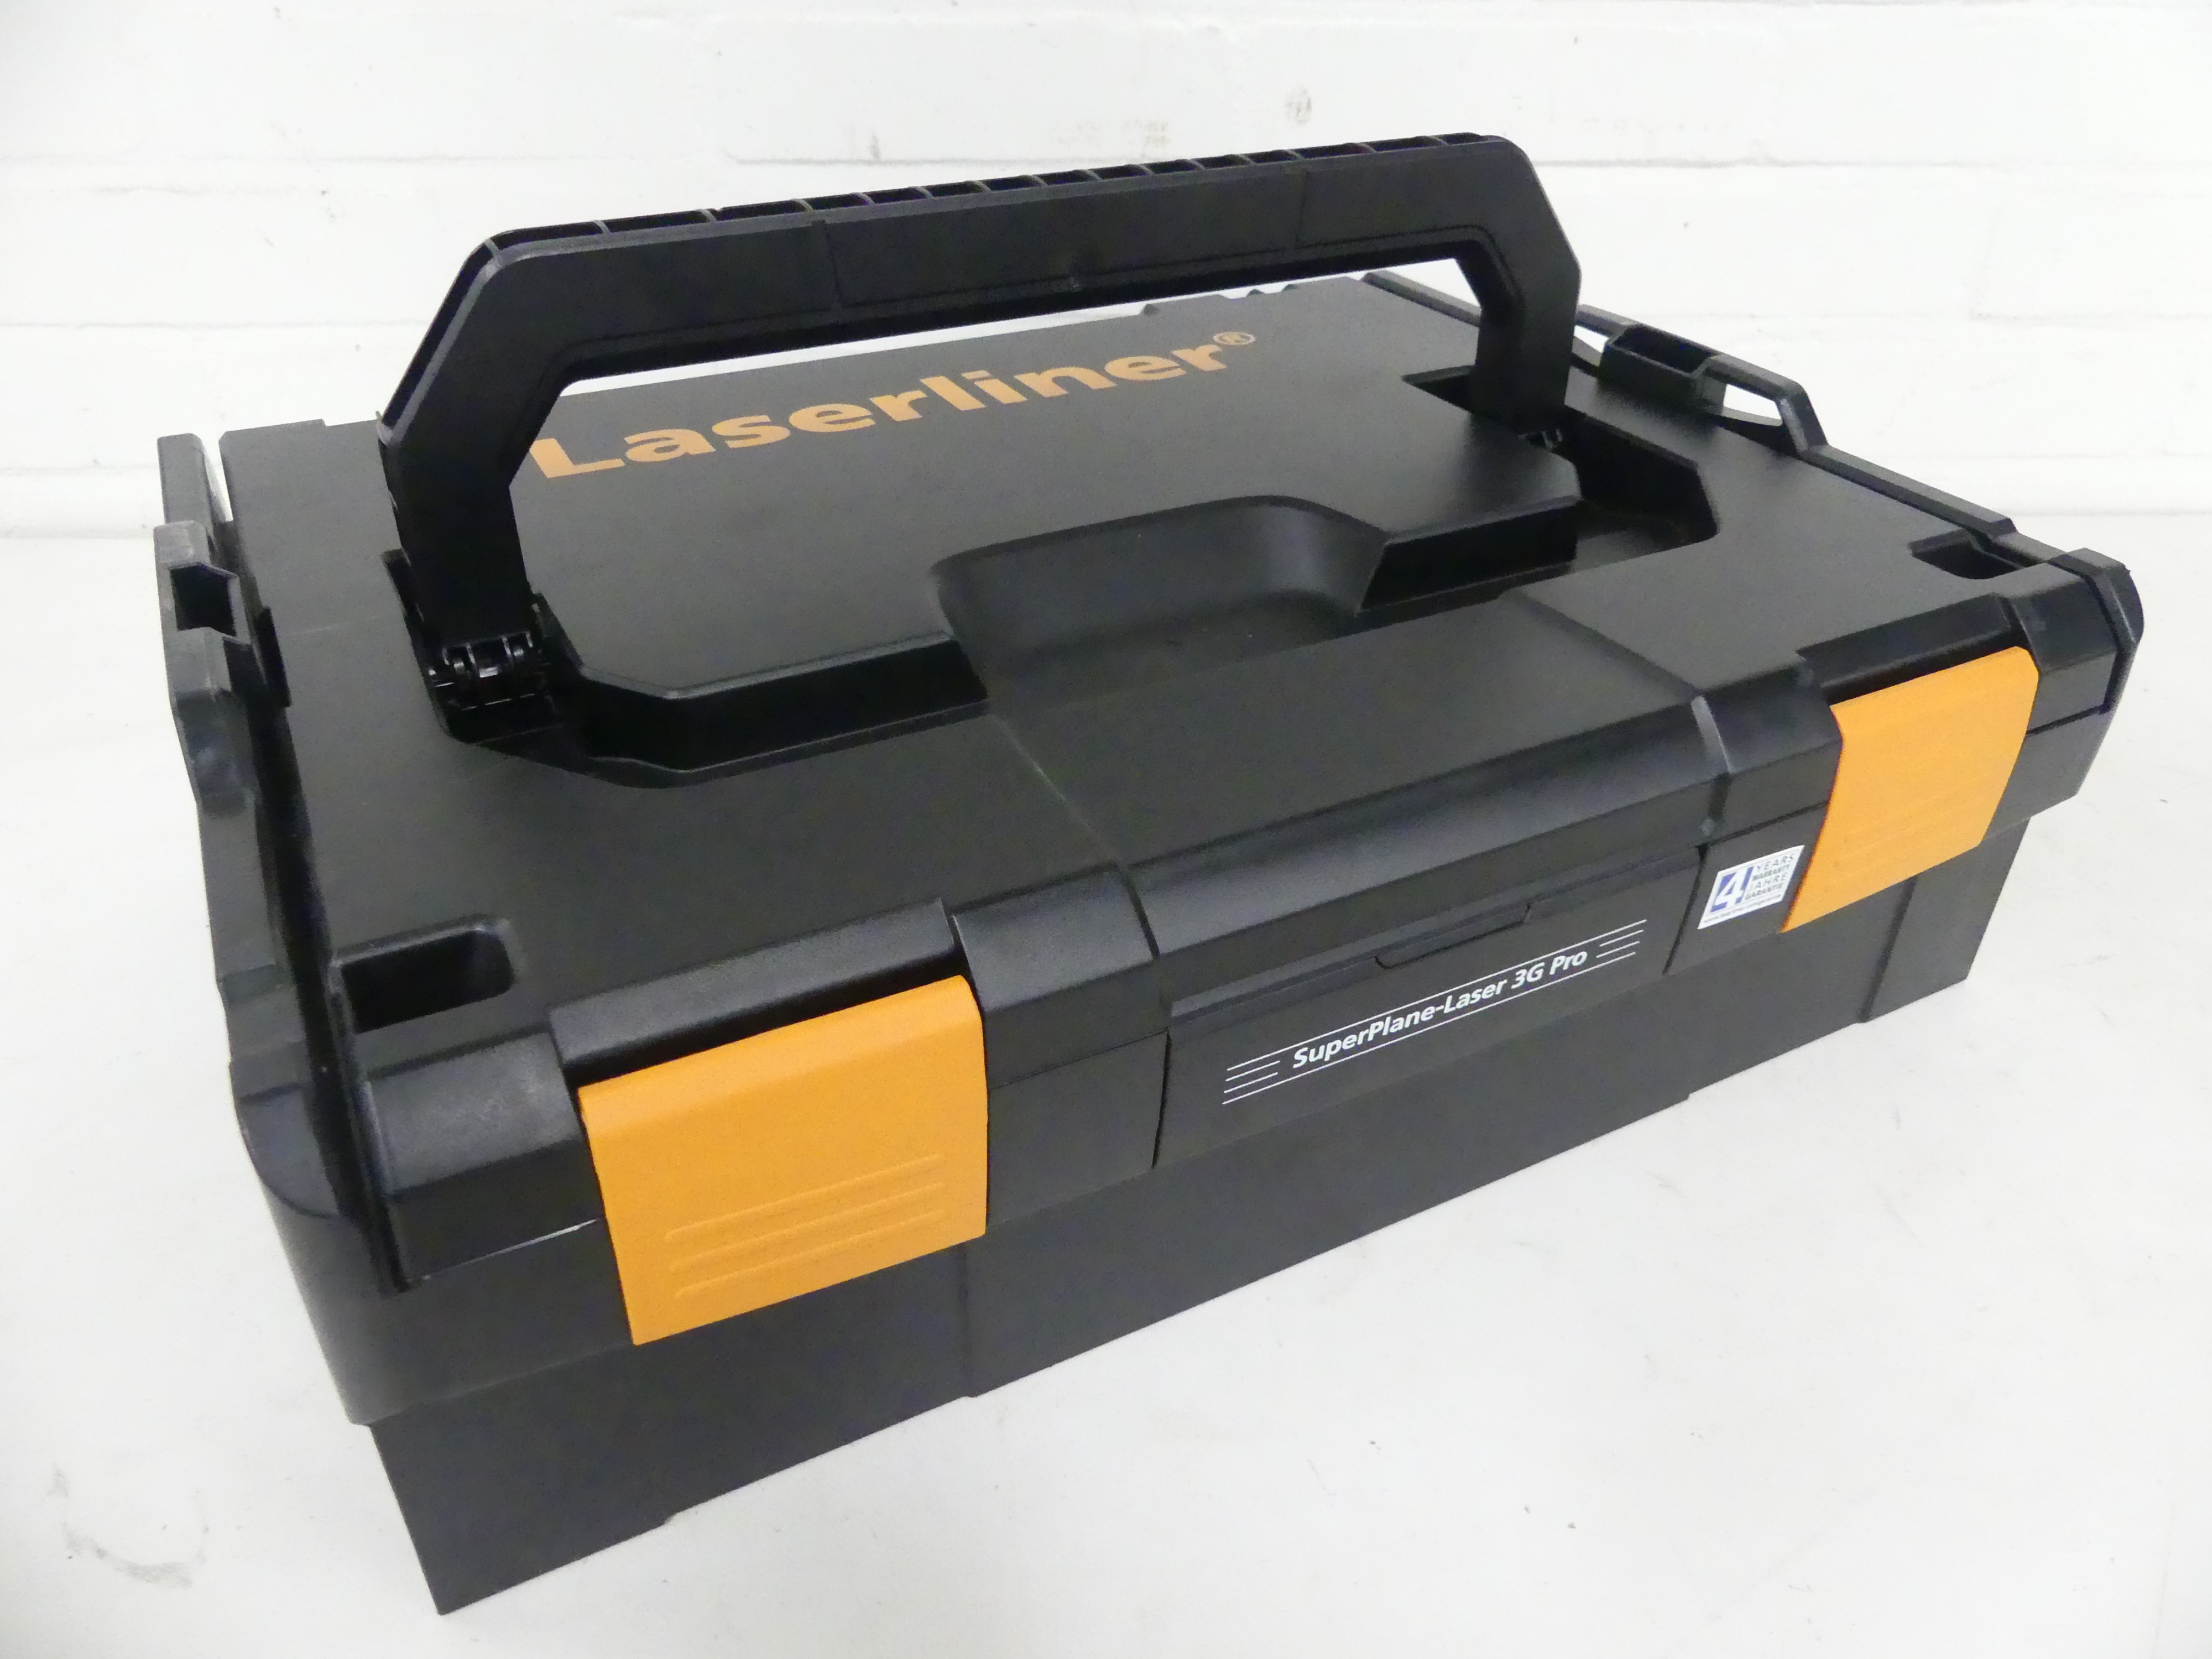 Laserline SuperPlane- Laser 3G Pro